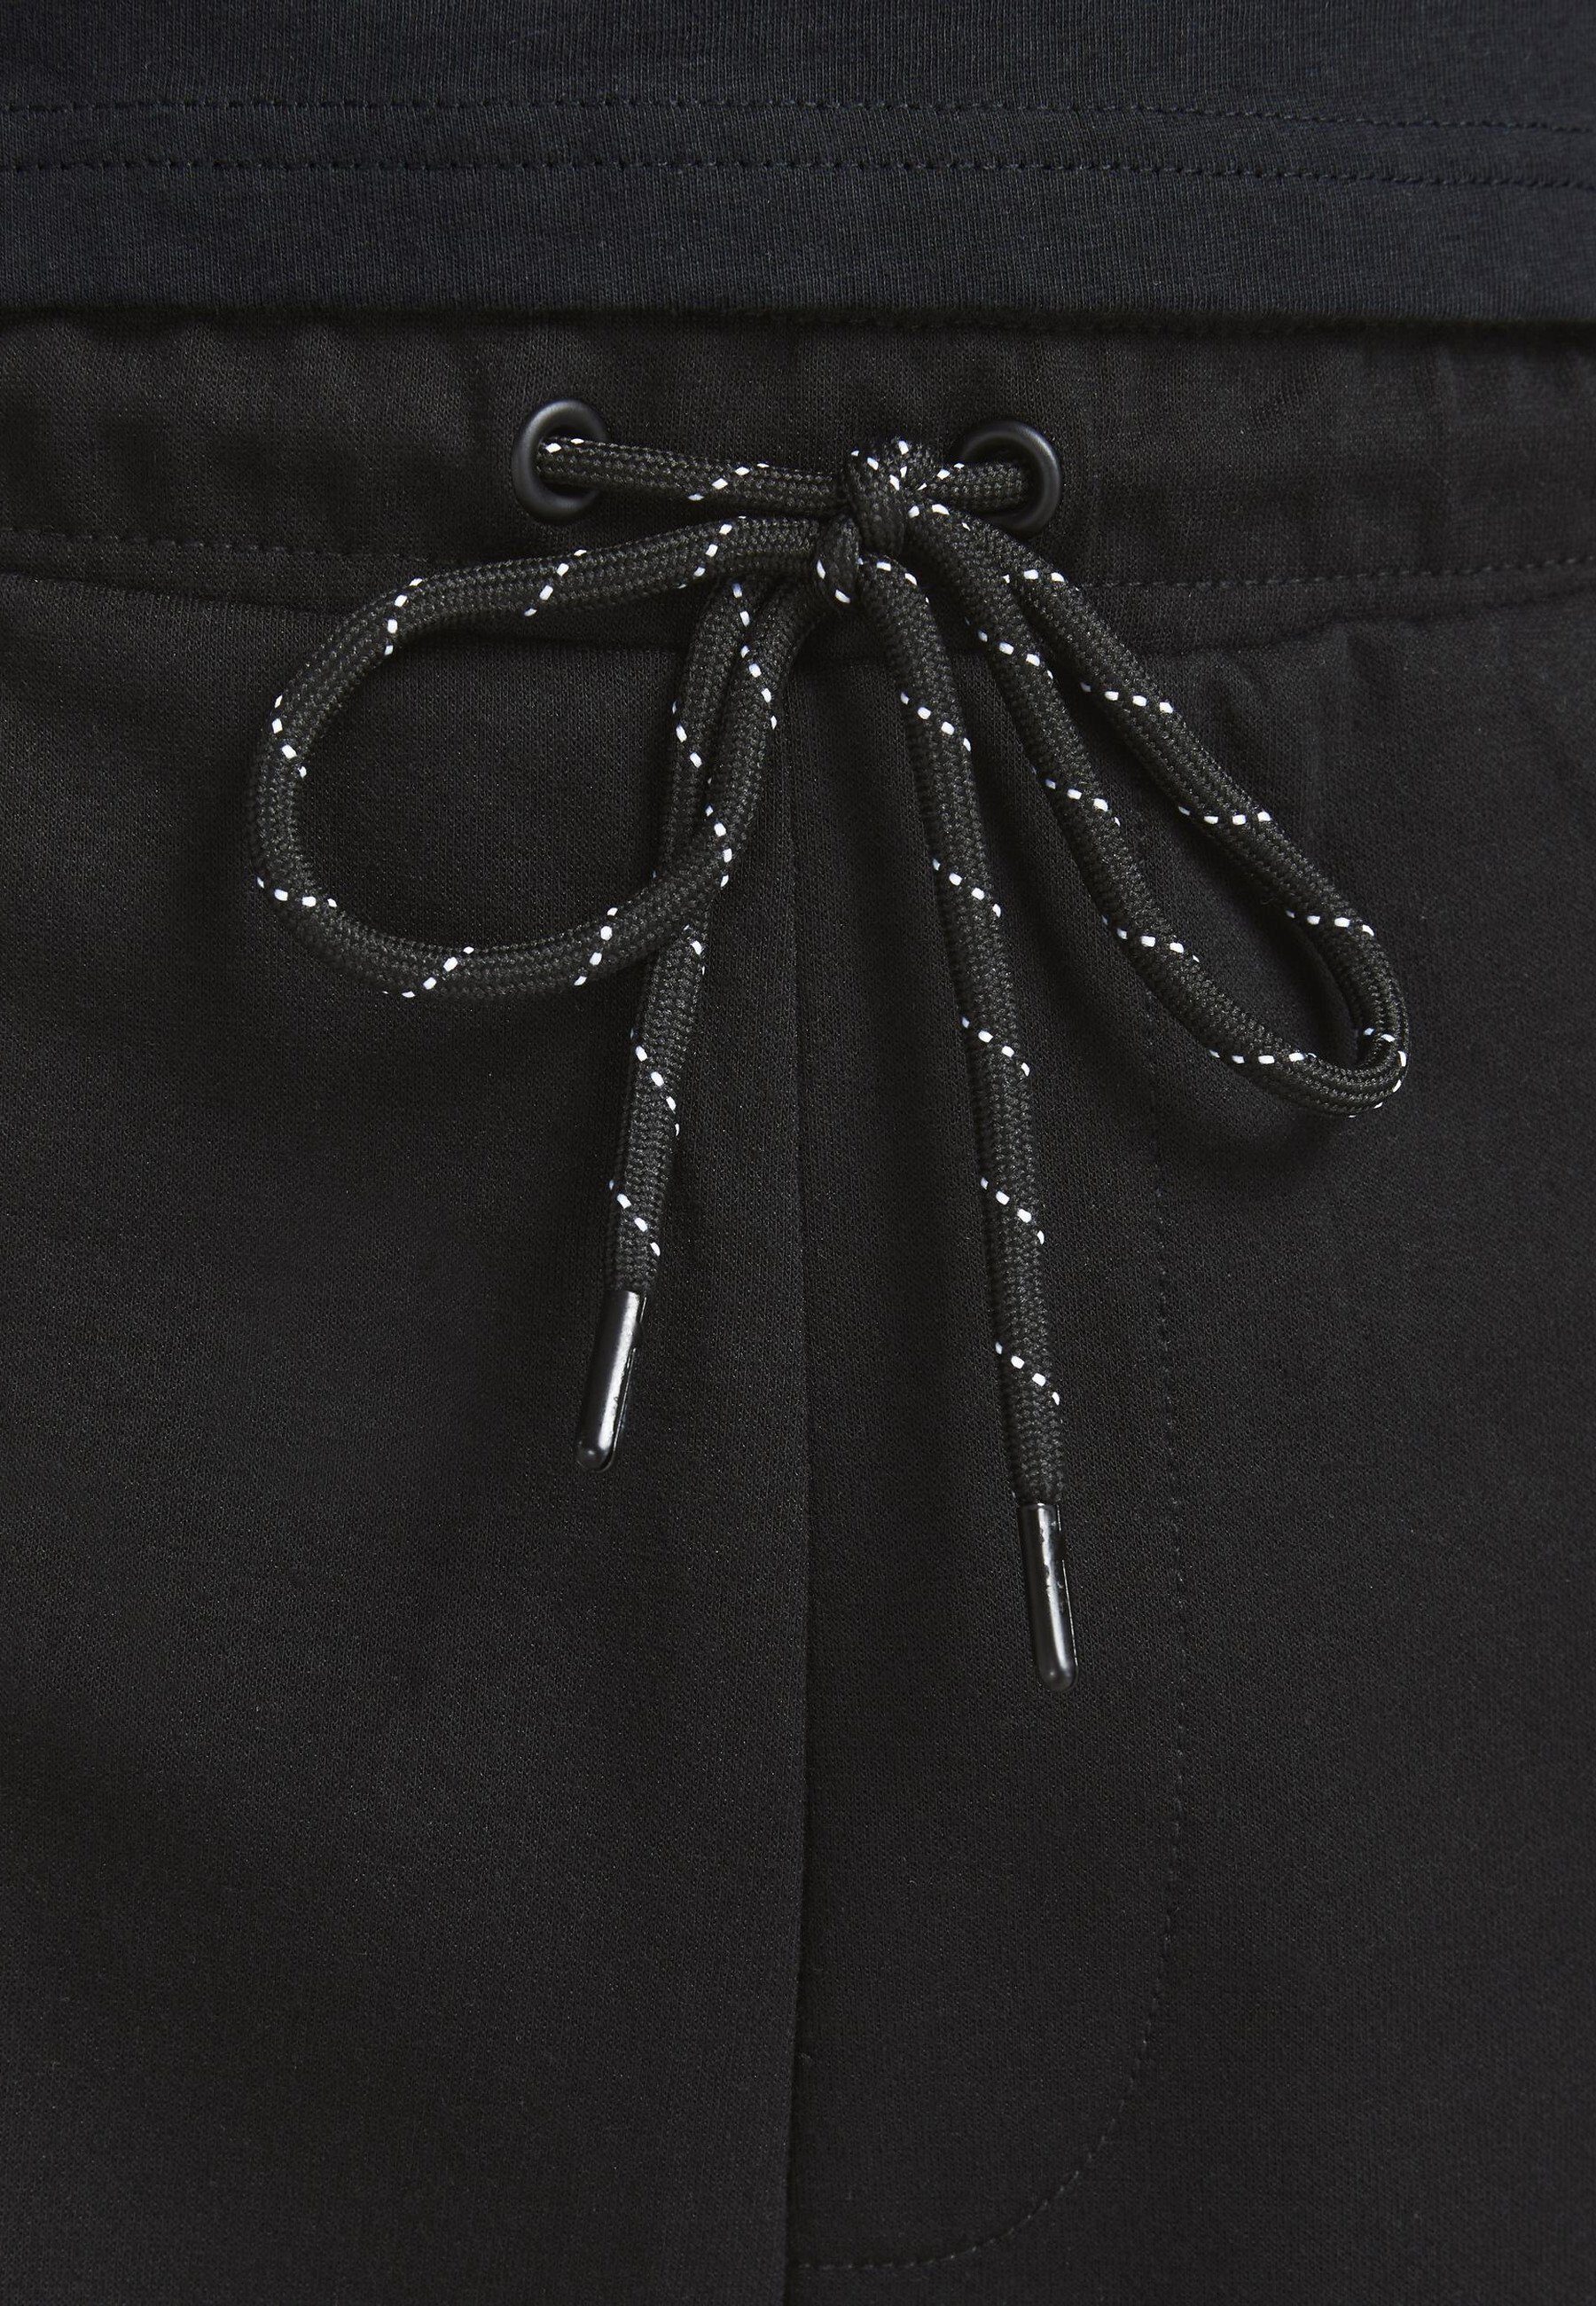 Jack & Jones Sweatshorts Logo-Aufnäher schwarz Shorts mit Weiche SHORTS SWEAT (1-tlg) STAIR